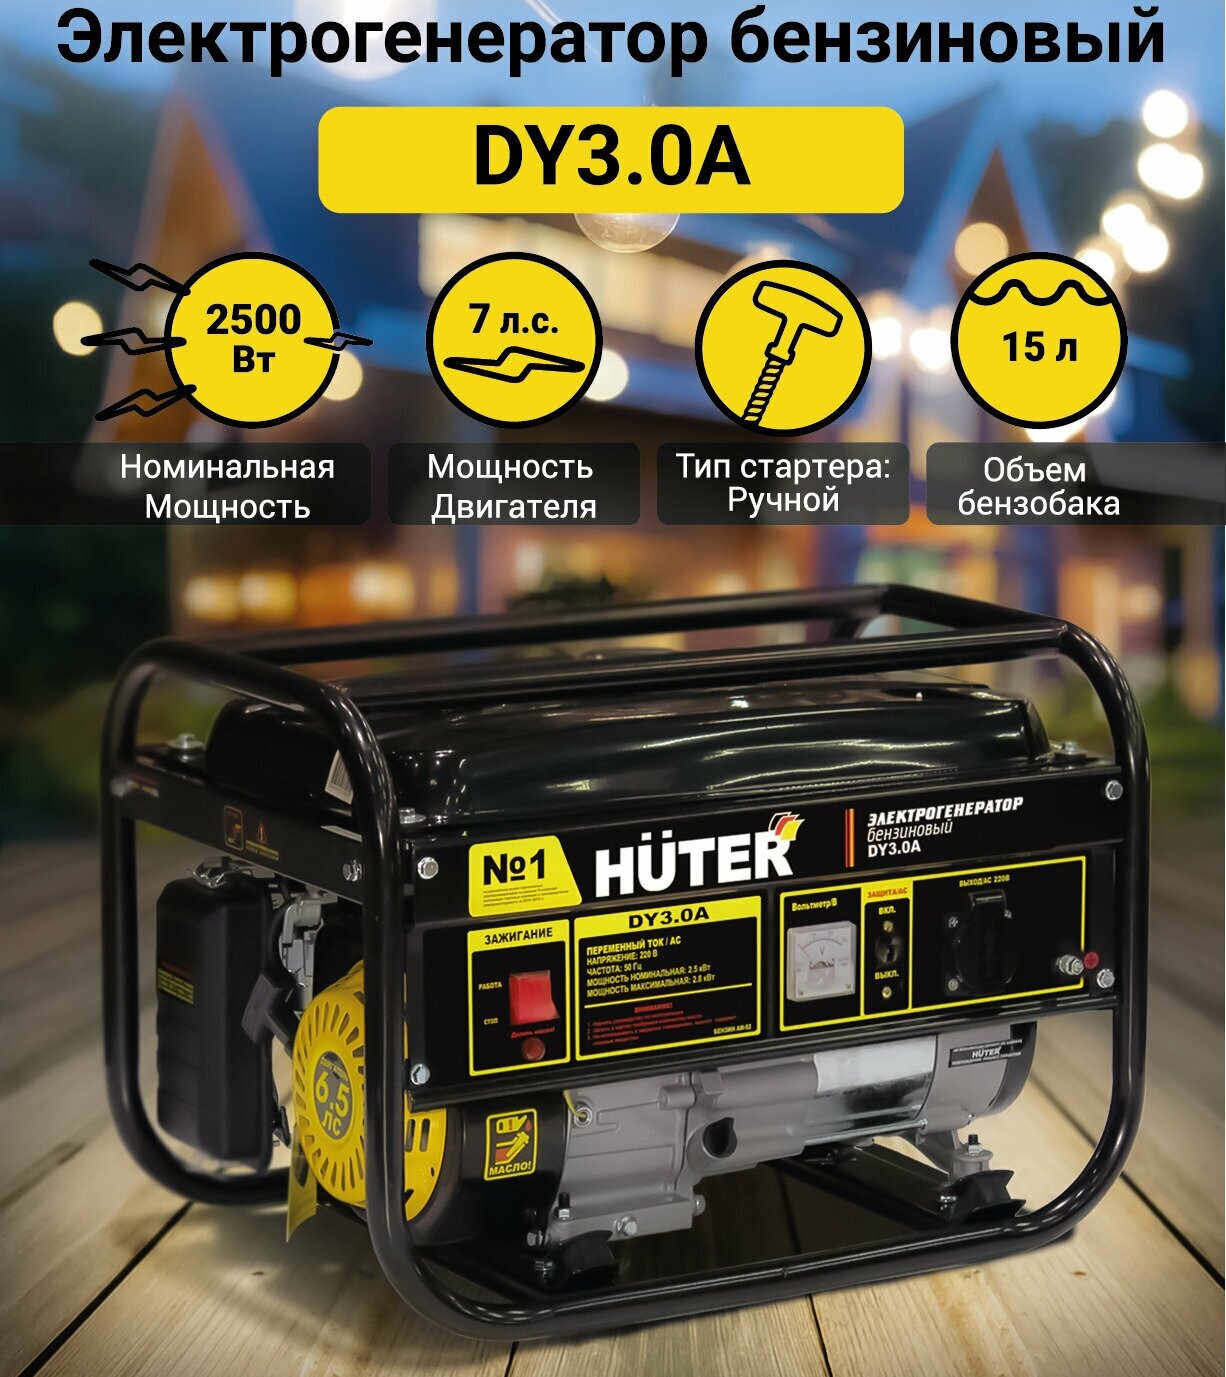 Бензиновый генератор HUTER DY3.0A, 220, 2.8кВт [64/1/56] - фото №15